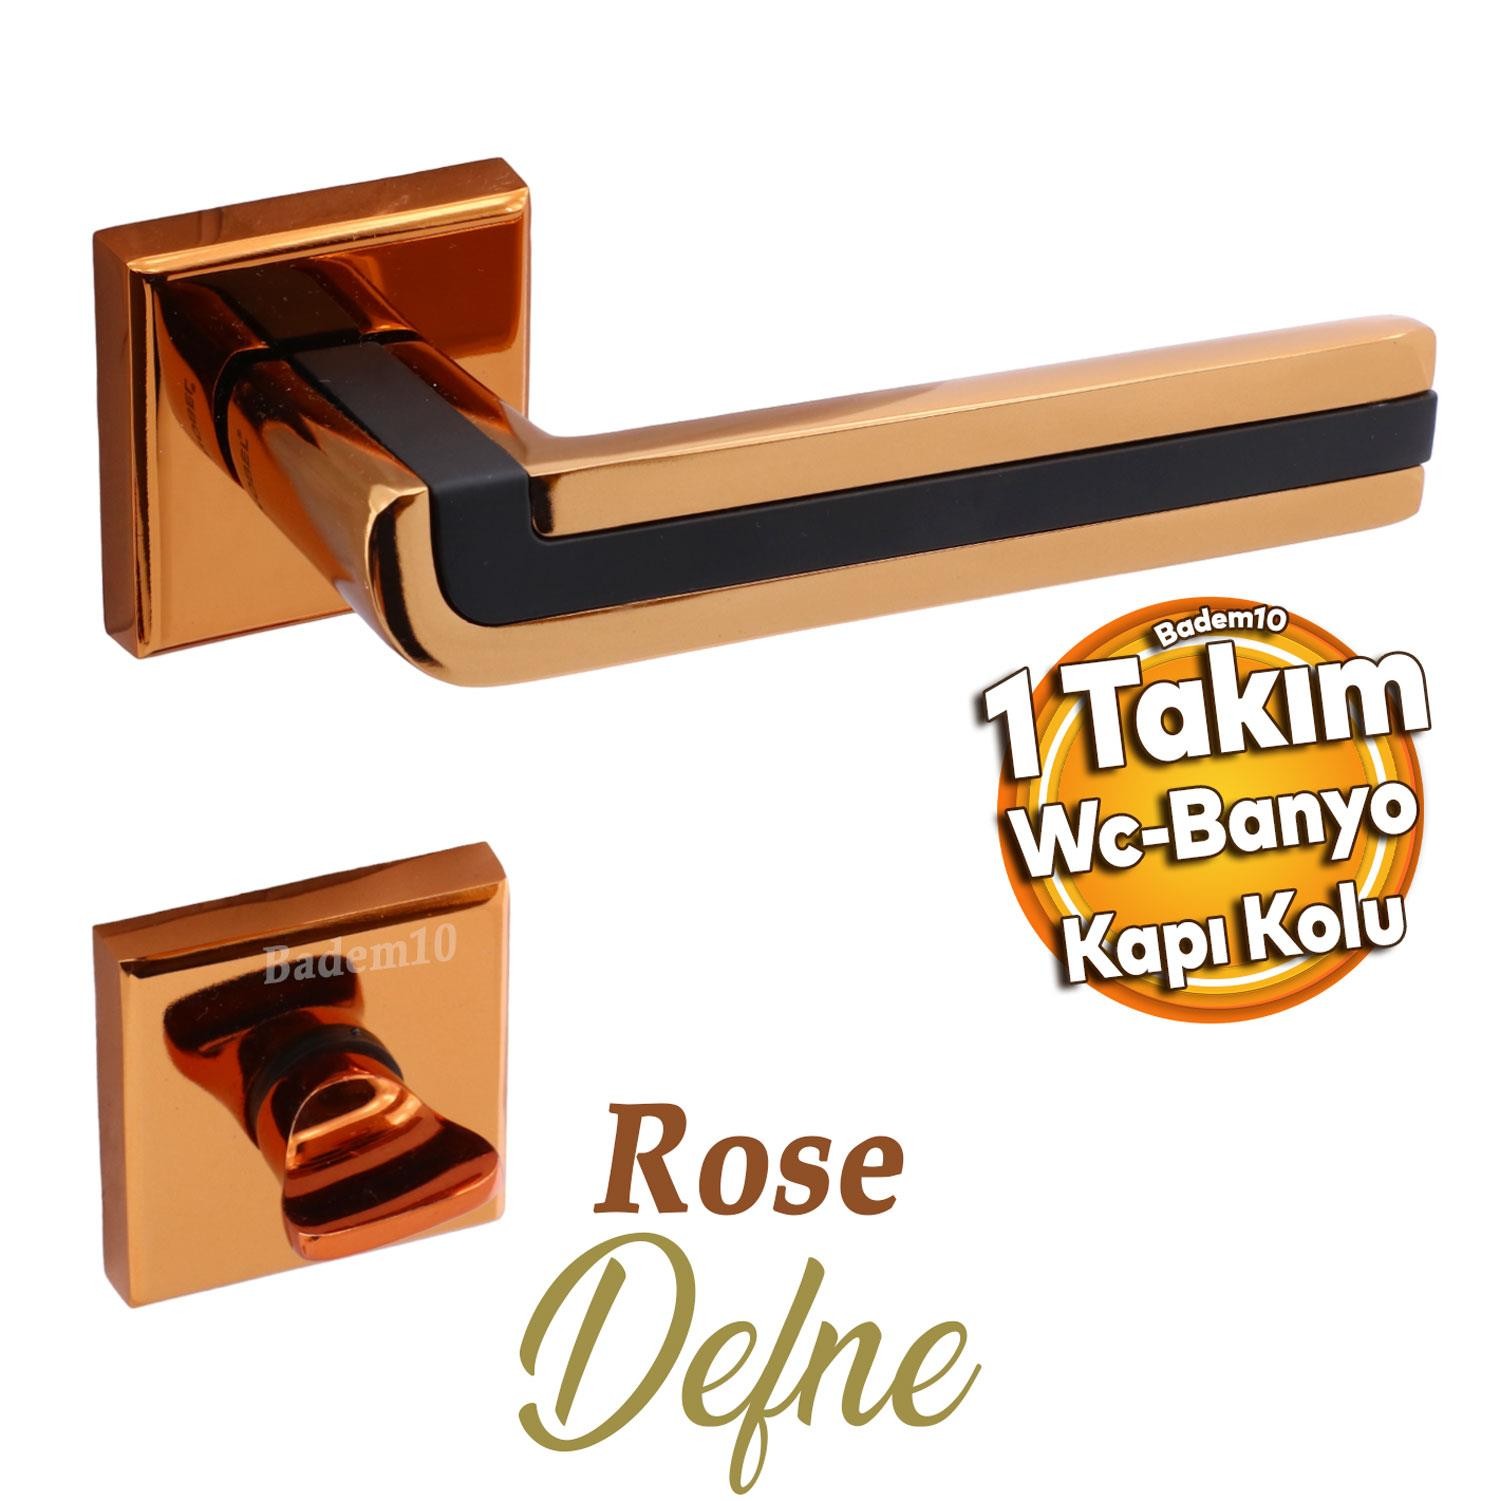 Defne Lüx Rose Gold Kare Rozetli Wc-Banyo Kapısı Uyumlu Kapı Kolu Sağa ve Sola Uygun Kolları 1 Takım